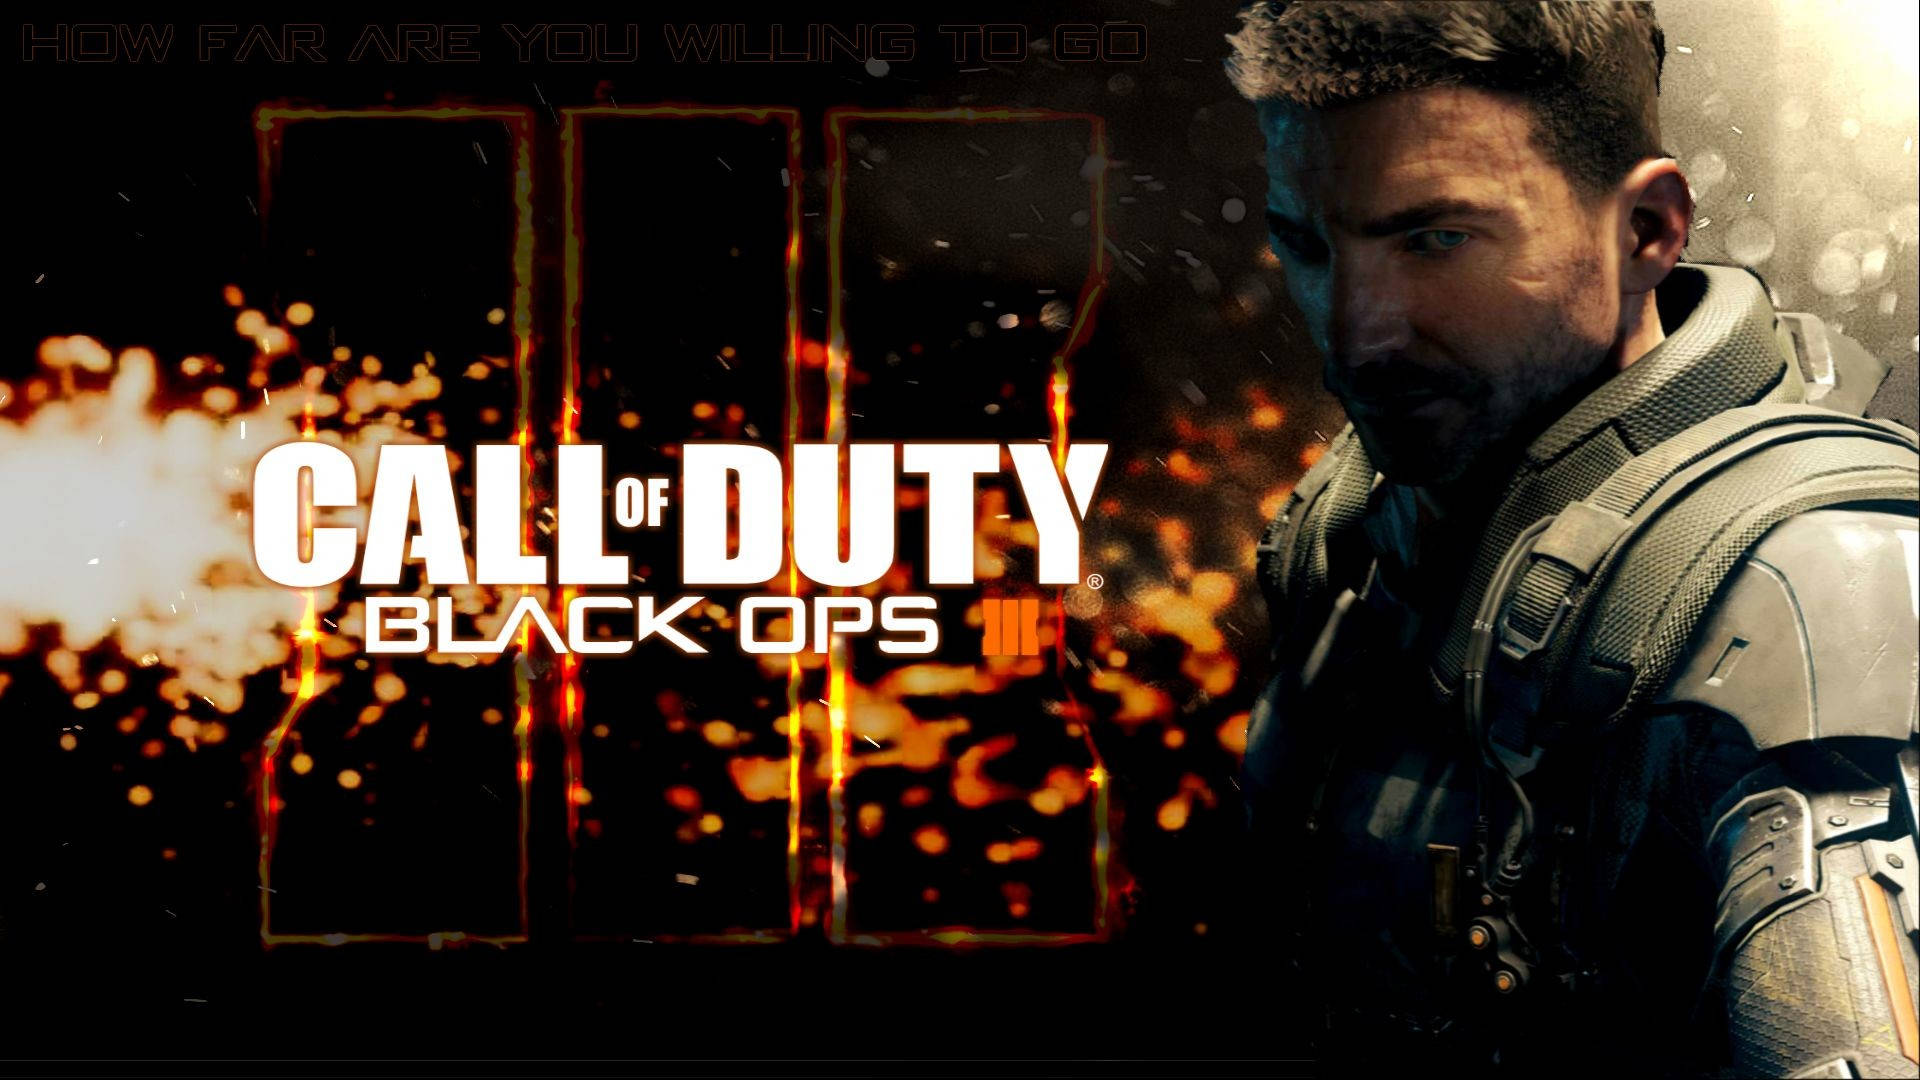 Callof Duty Black Ops 3 - Utlösa Kaos Wallpaper